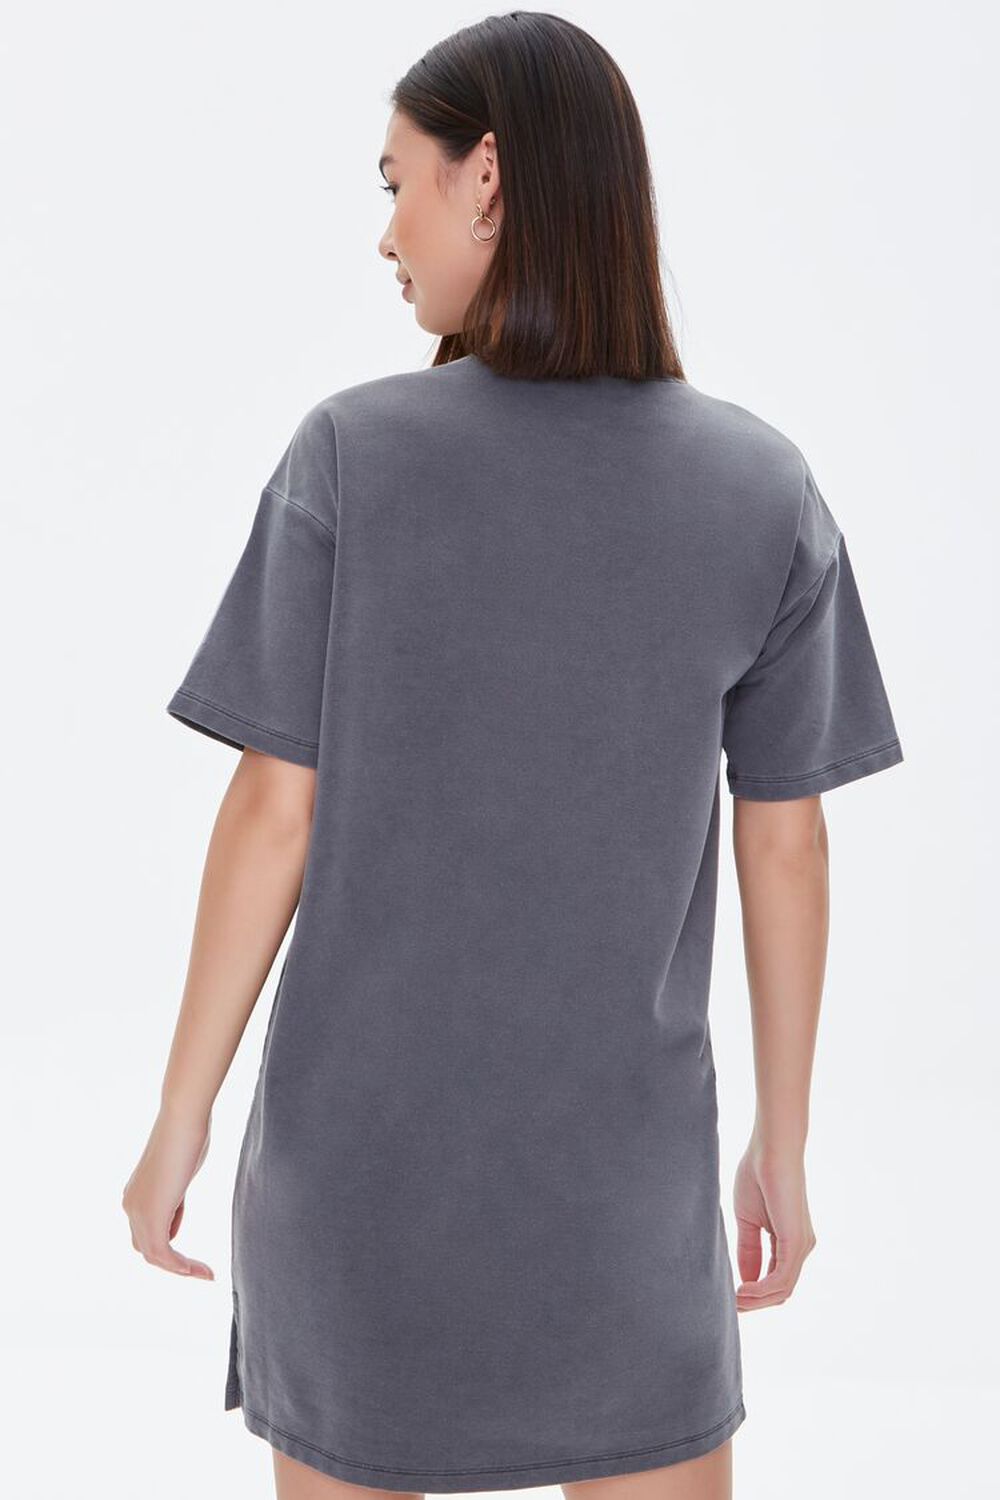 GREY Mineral Wash T-Shirt Dress, image 3